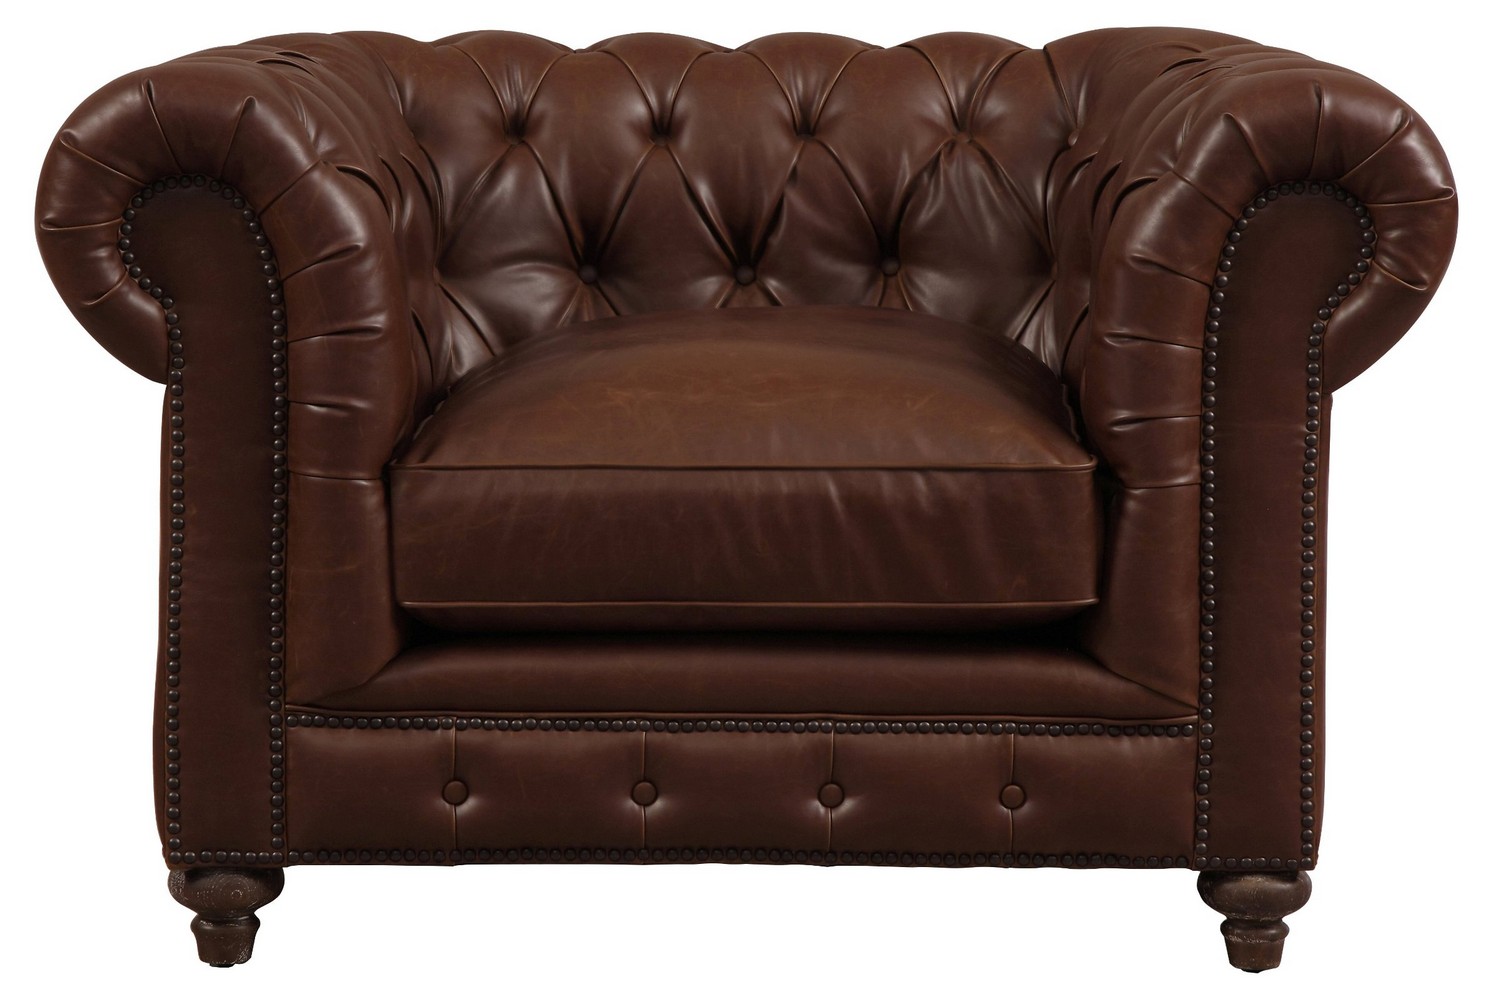 TOV Furniture Durango Antique Brown Leather Club Chair